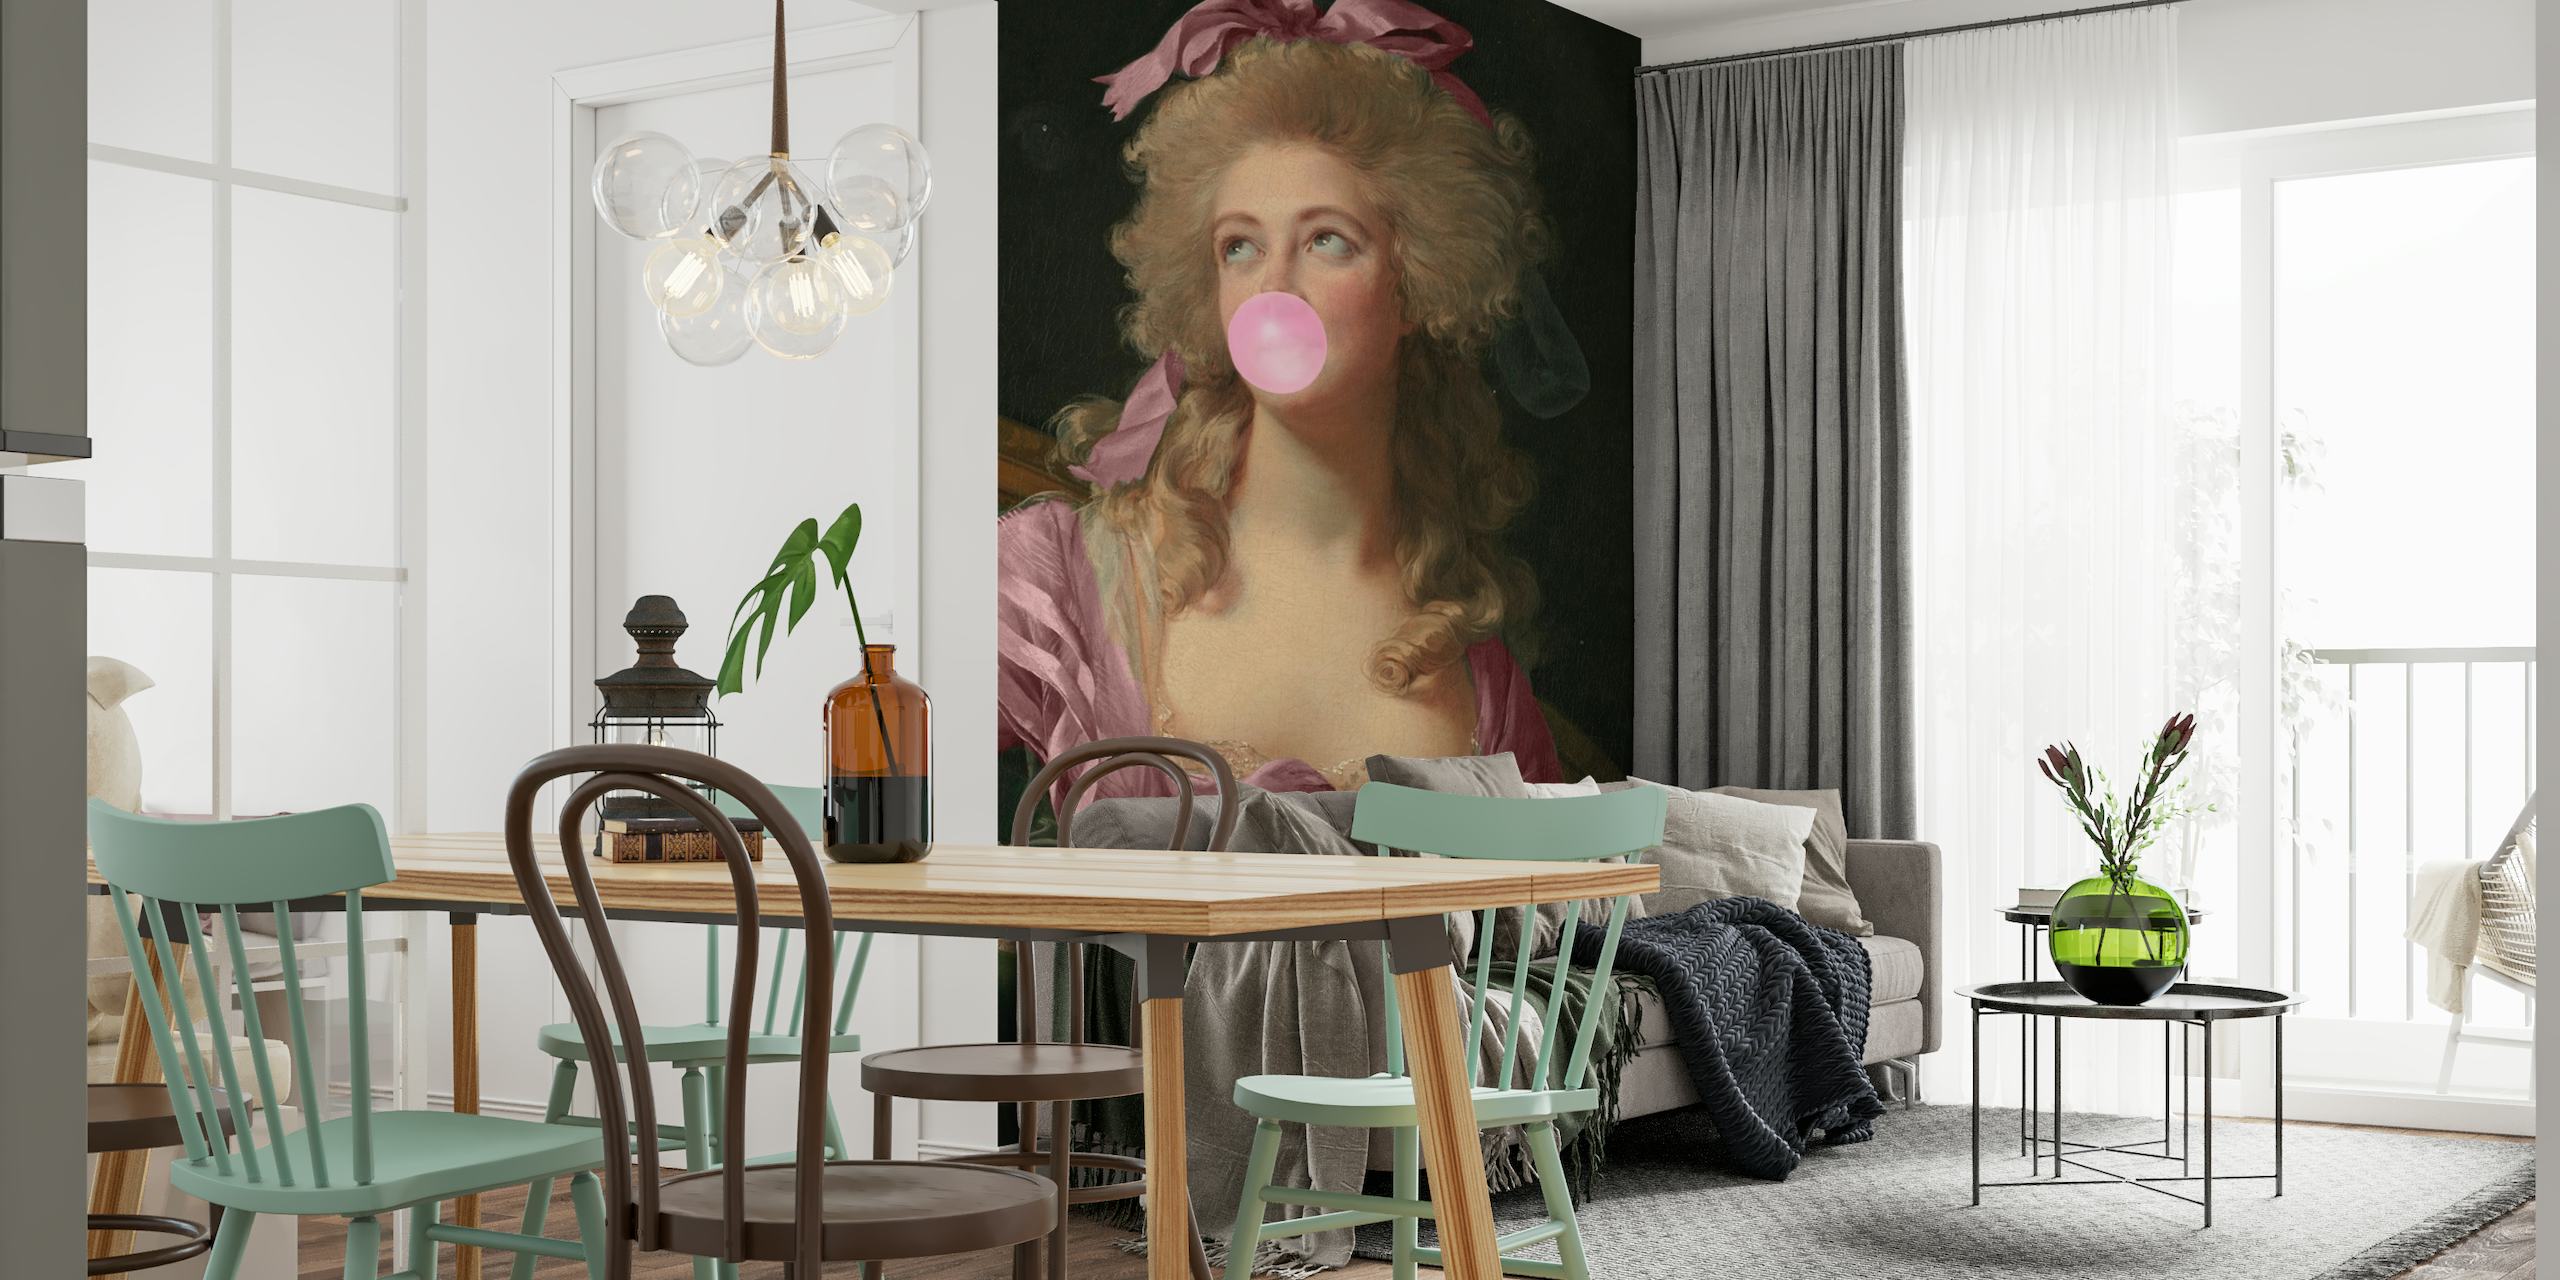 Et elegant, klassisk portræt af en kvinde med en lyserød sløjfe, der puster i et tyggegummi